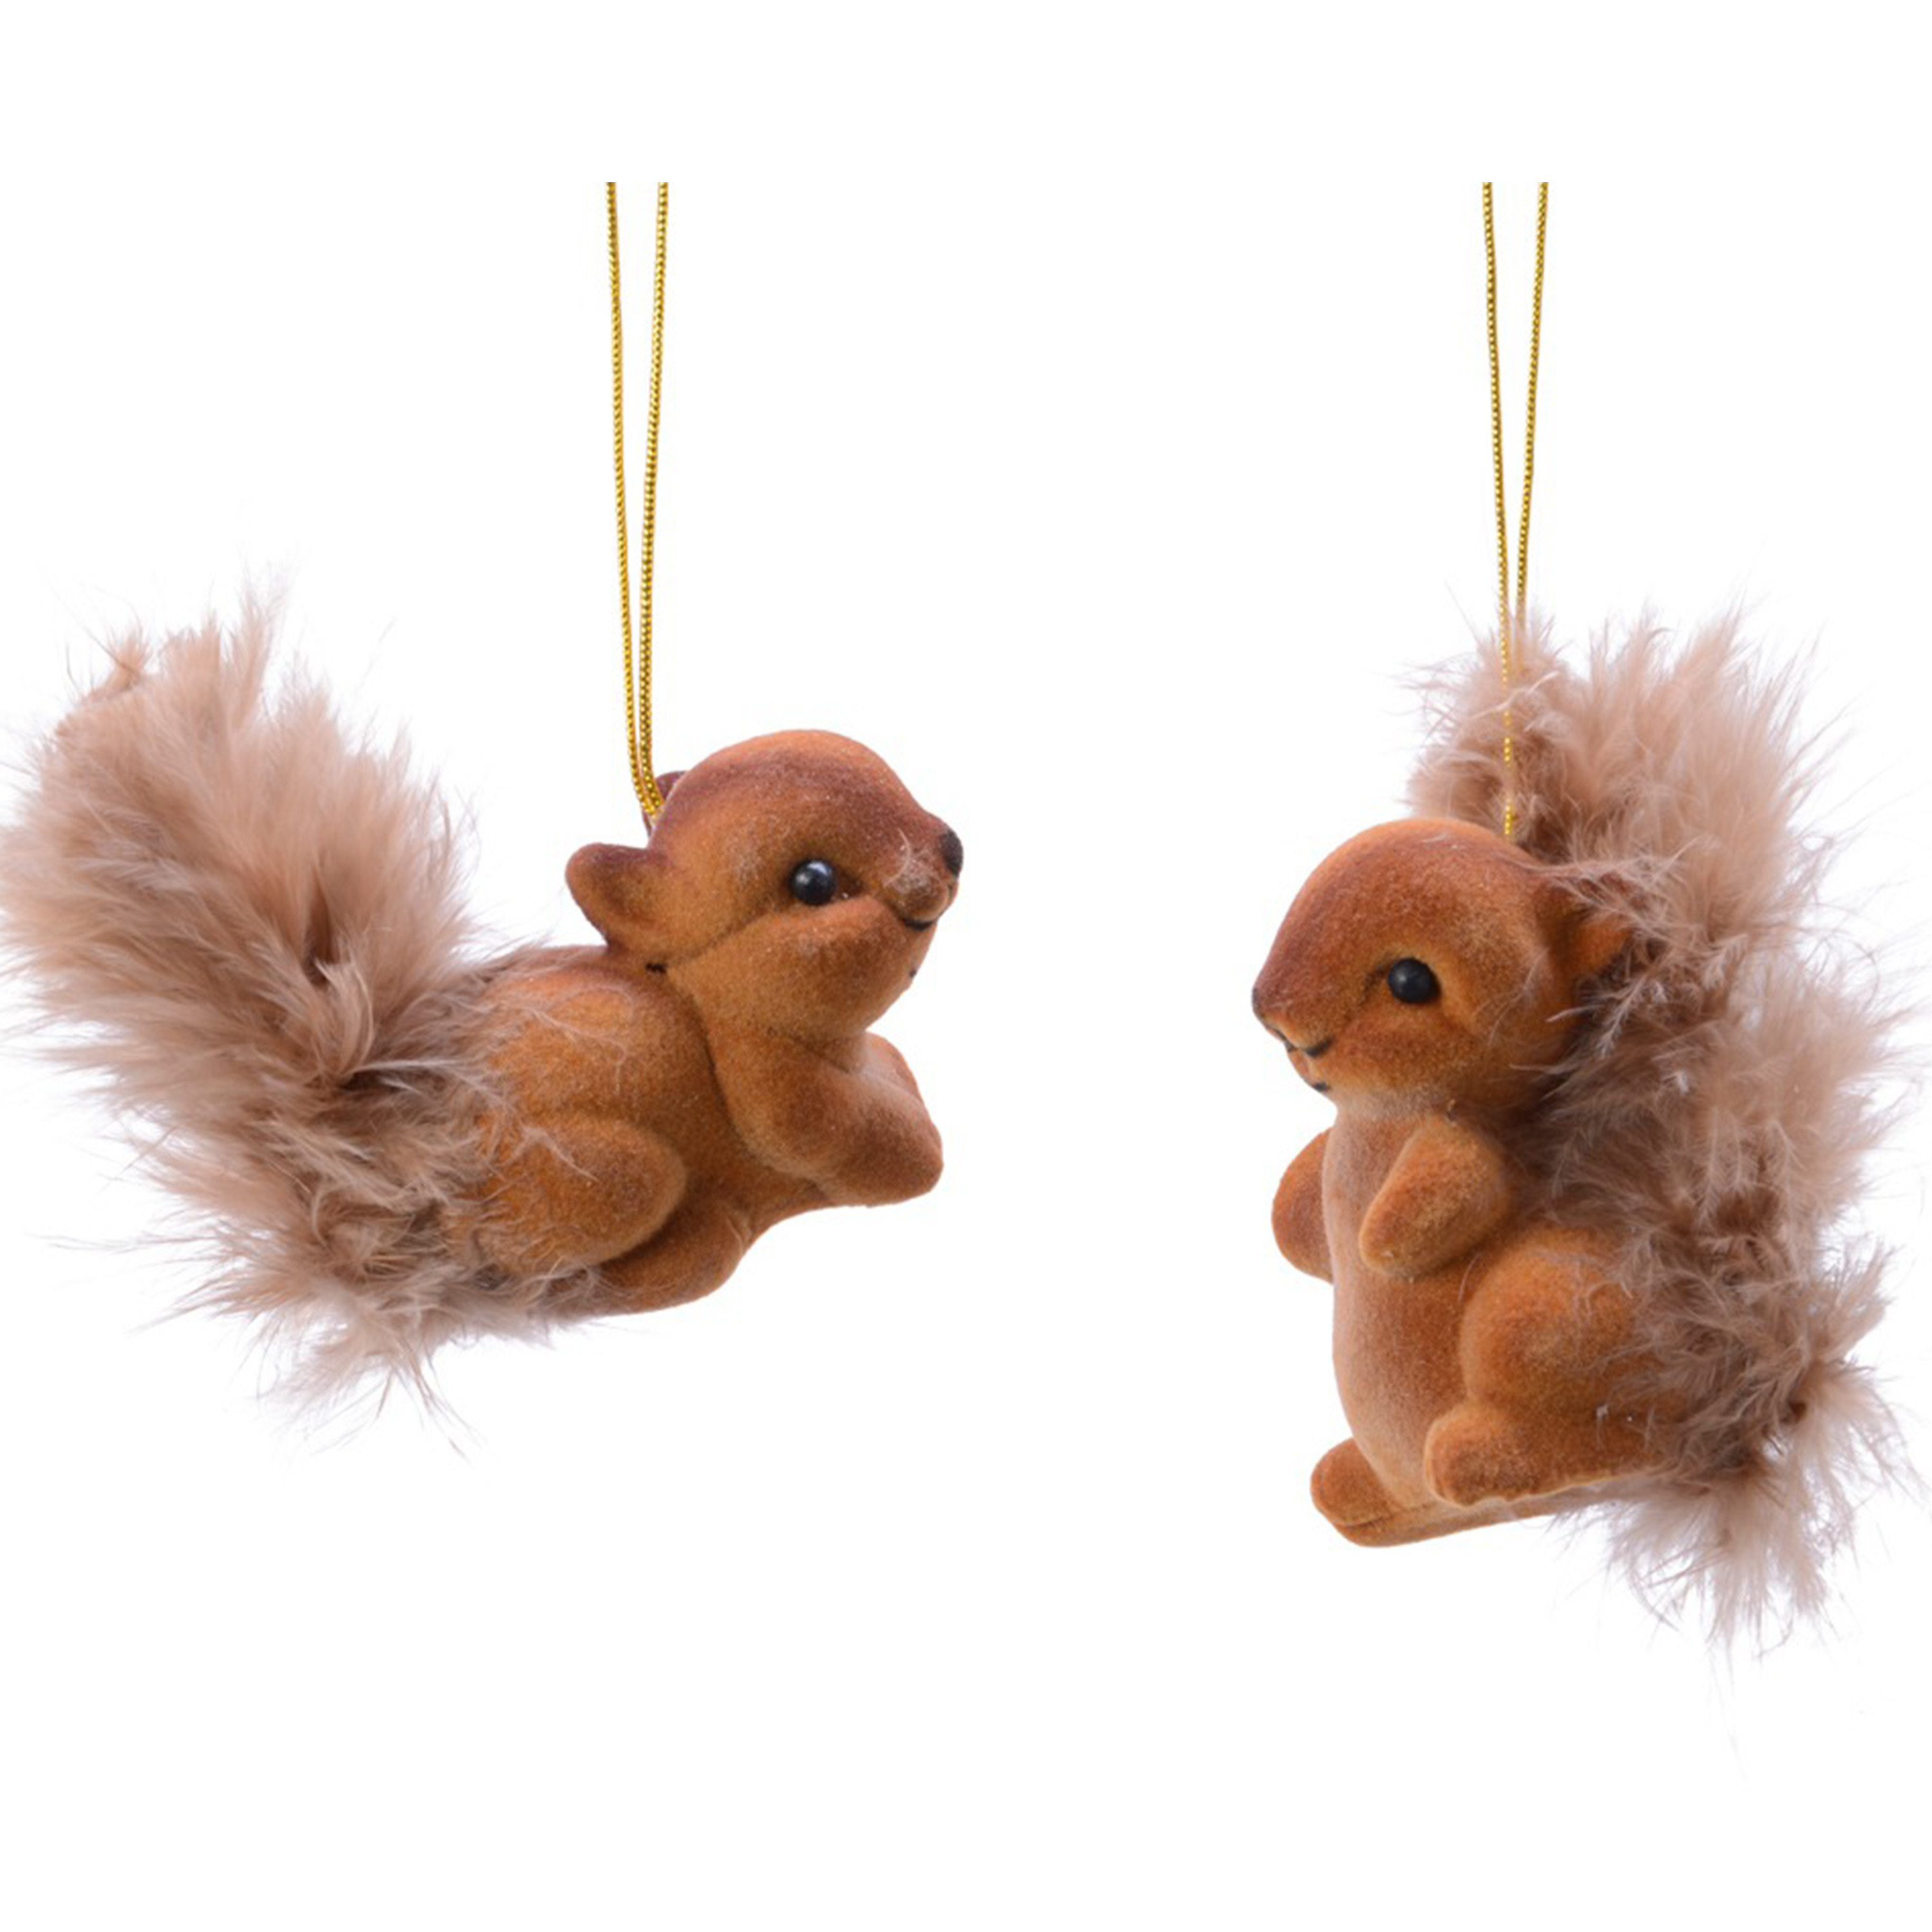 2x Kerstboomhanger-Kersthanger bruine eekhoorns 6 cm